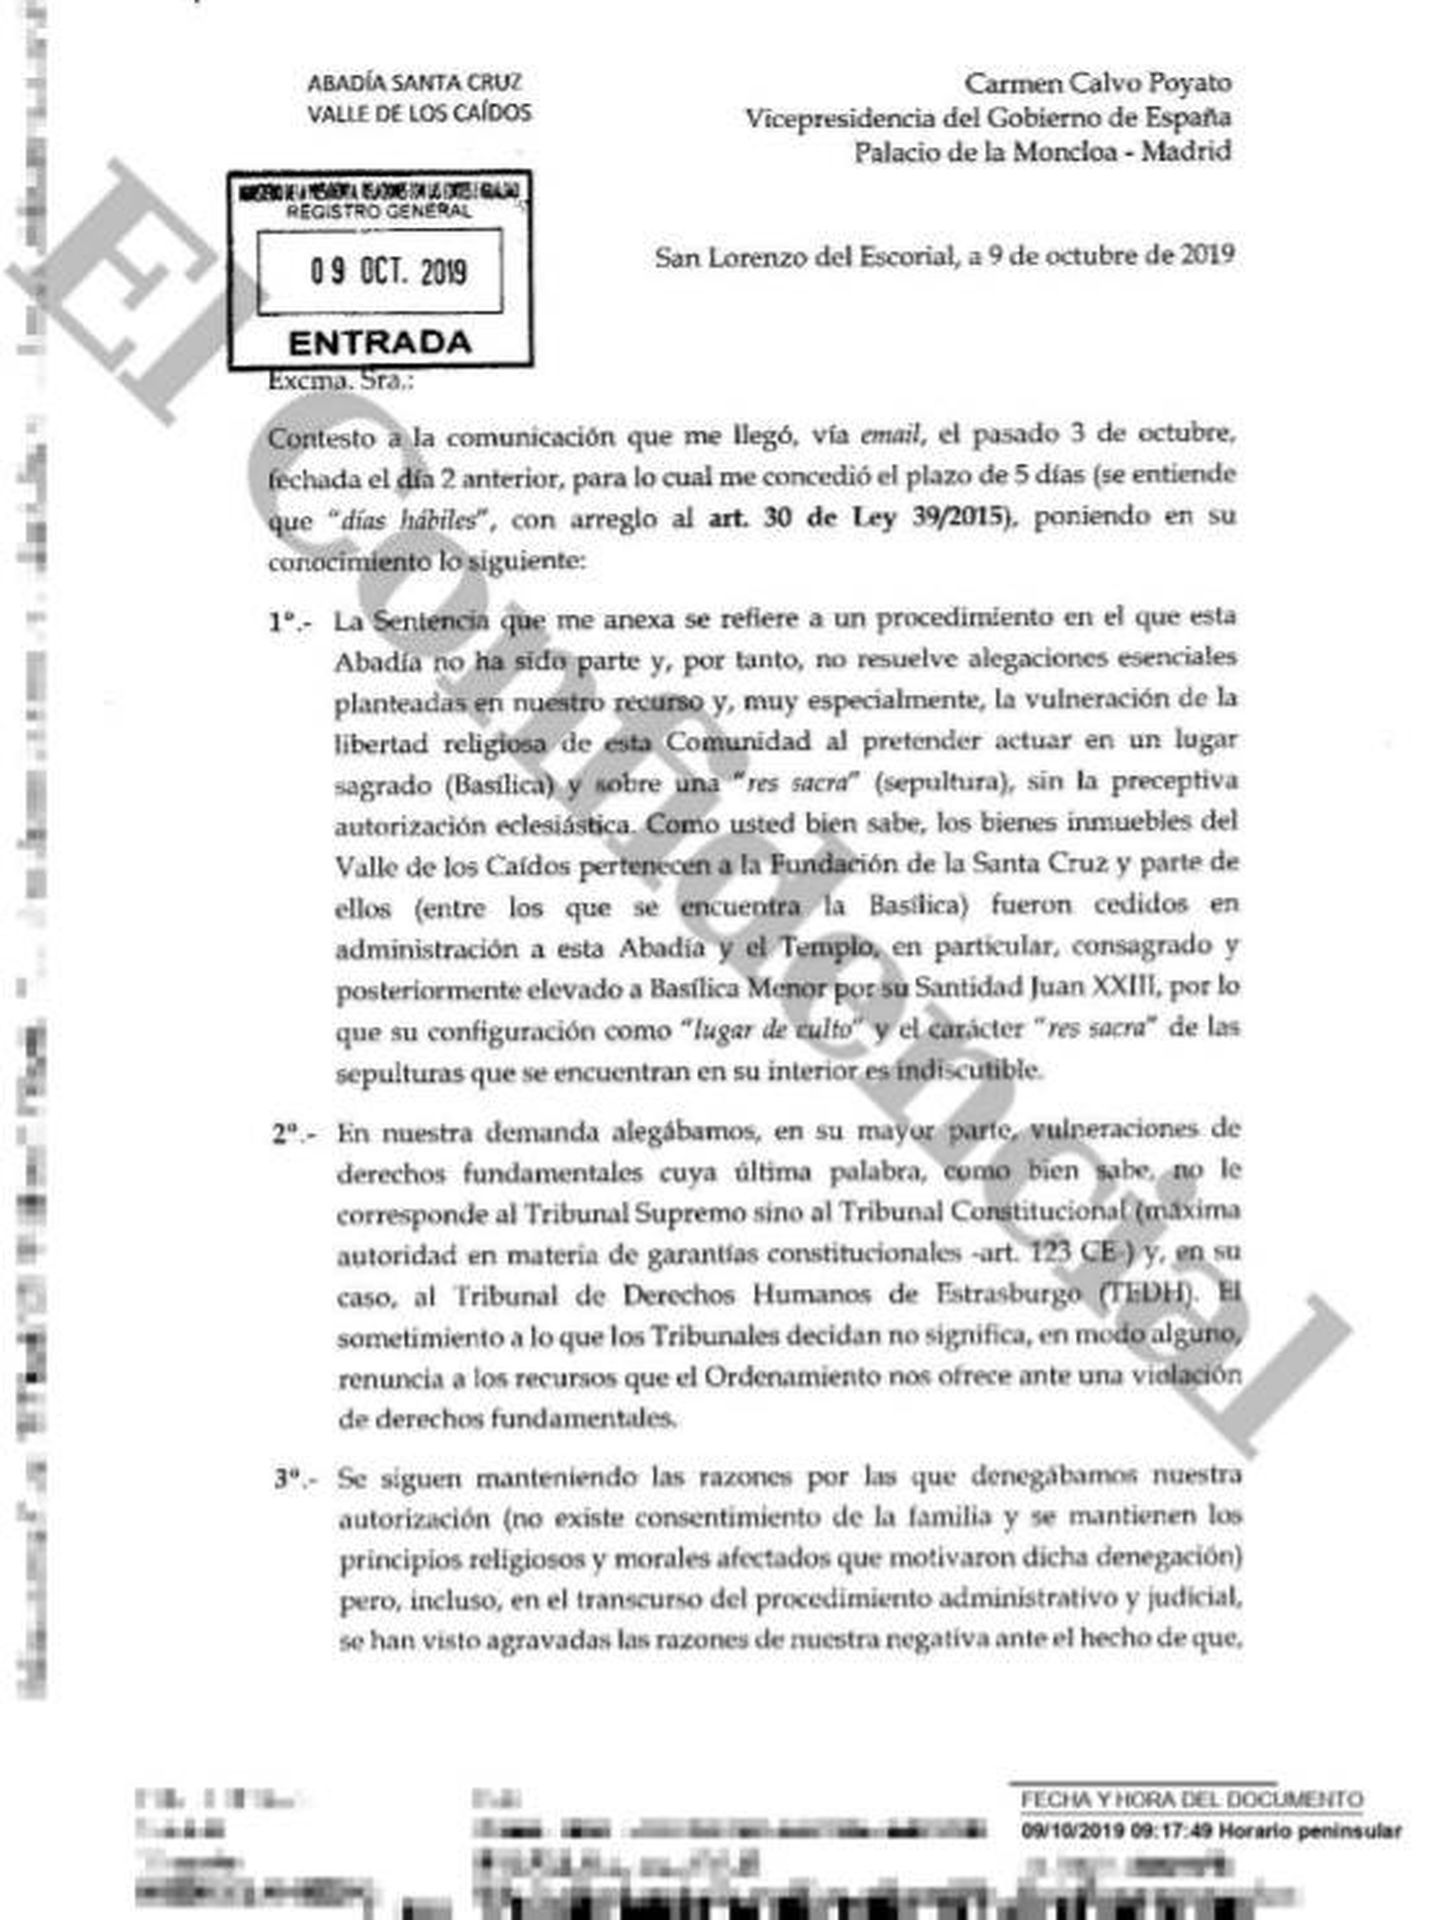 Consulte aquí en PDF la carta del prior administrador del Valle de los Caídos a Carmen Calvo. (EC)